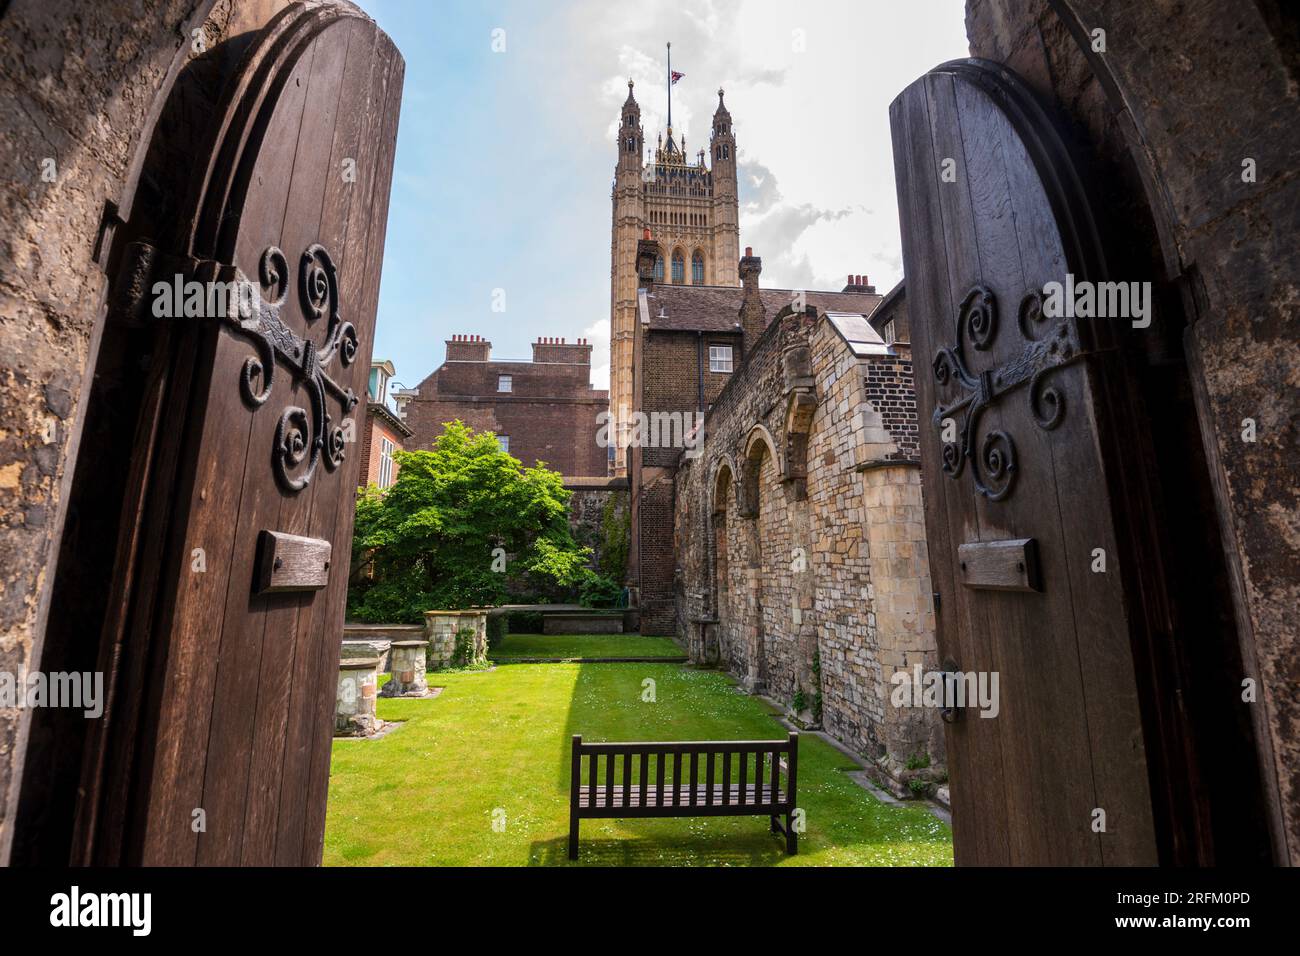 Guarda attraverso vecchie porte medievali in legno e l'arco in uno storico cortile in mattoni con il Palazzo di Westminster, la Victoria Tower del Parlamento britannico. Foto Stock